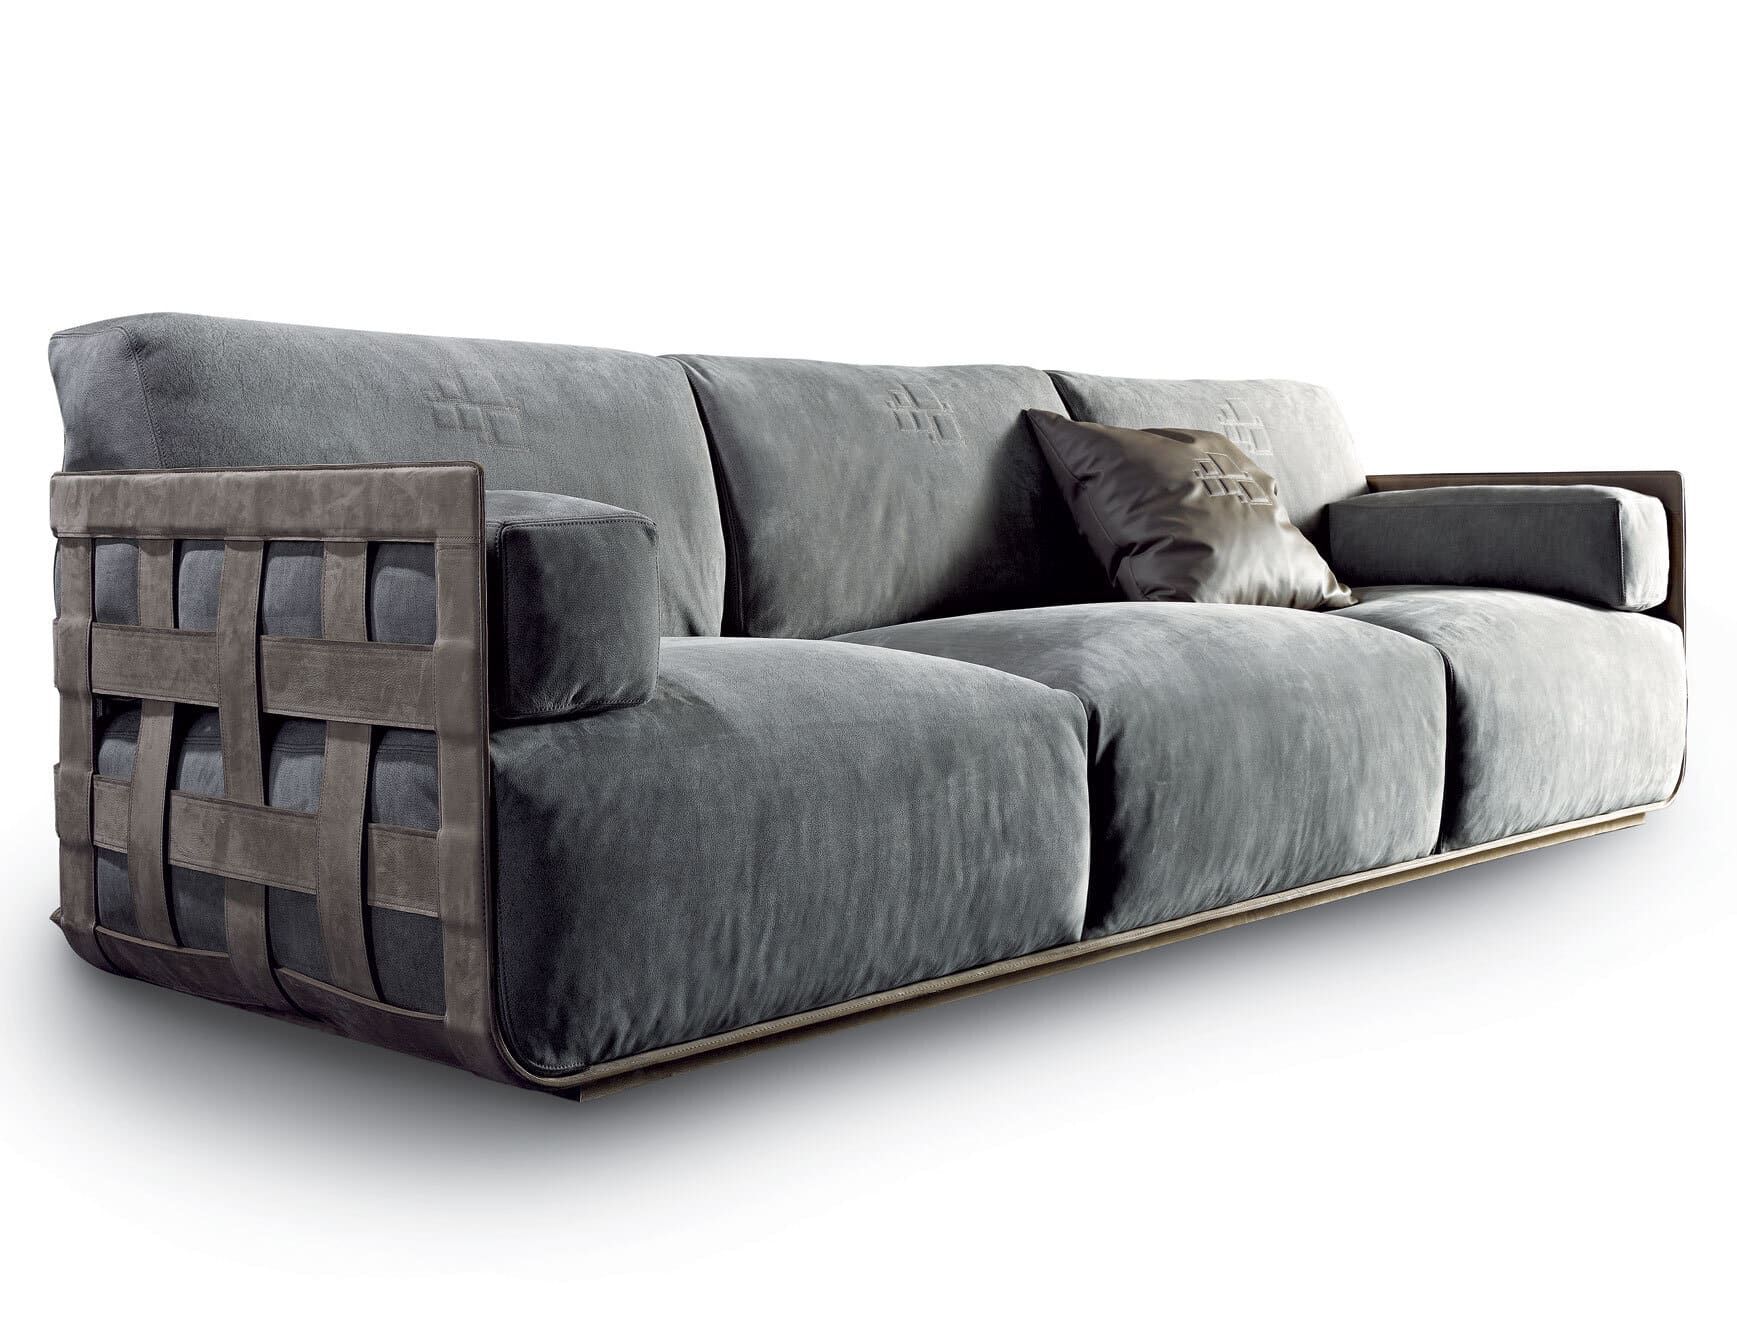 Braid modern luxury sofa chair with grey leather